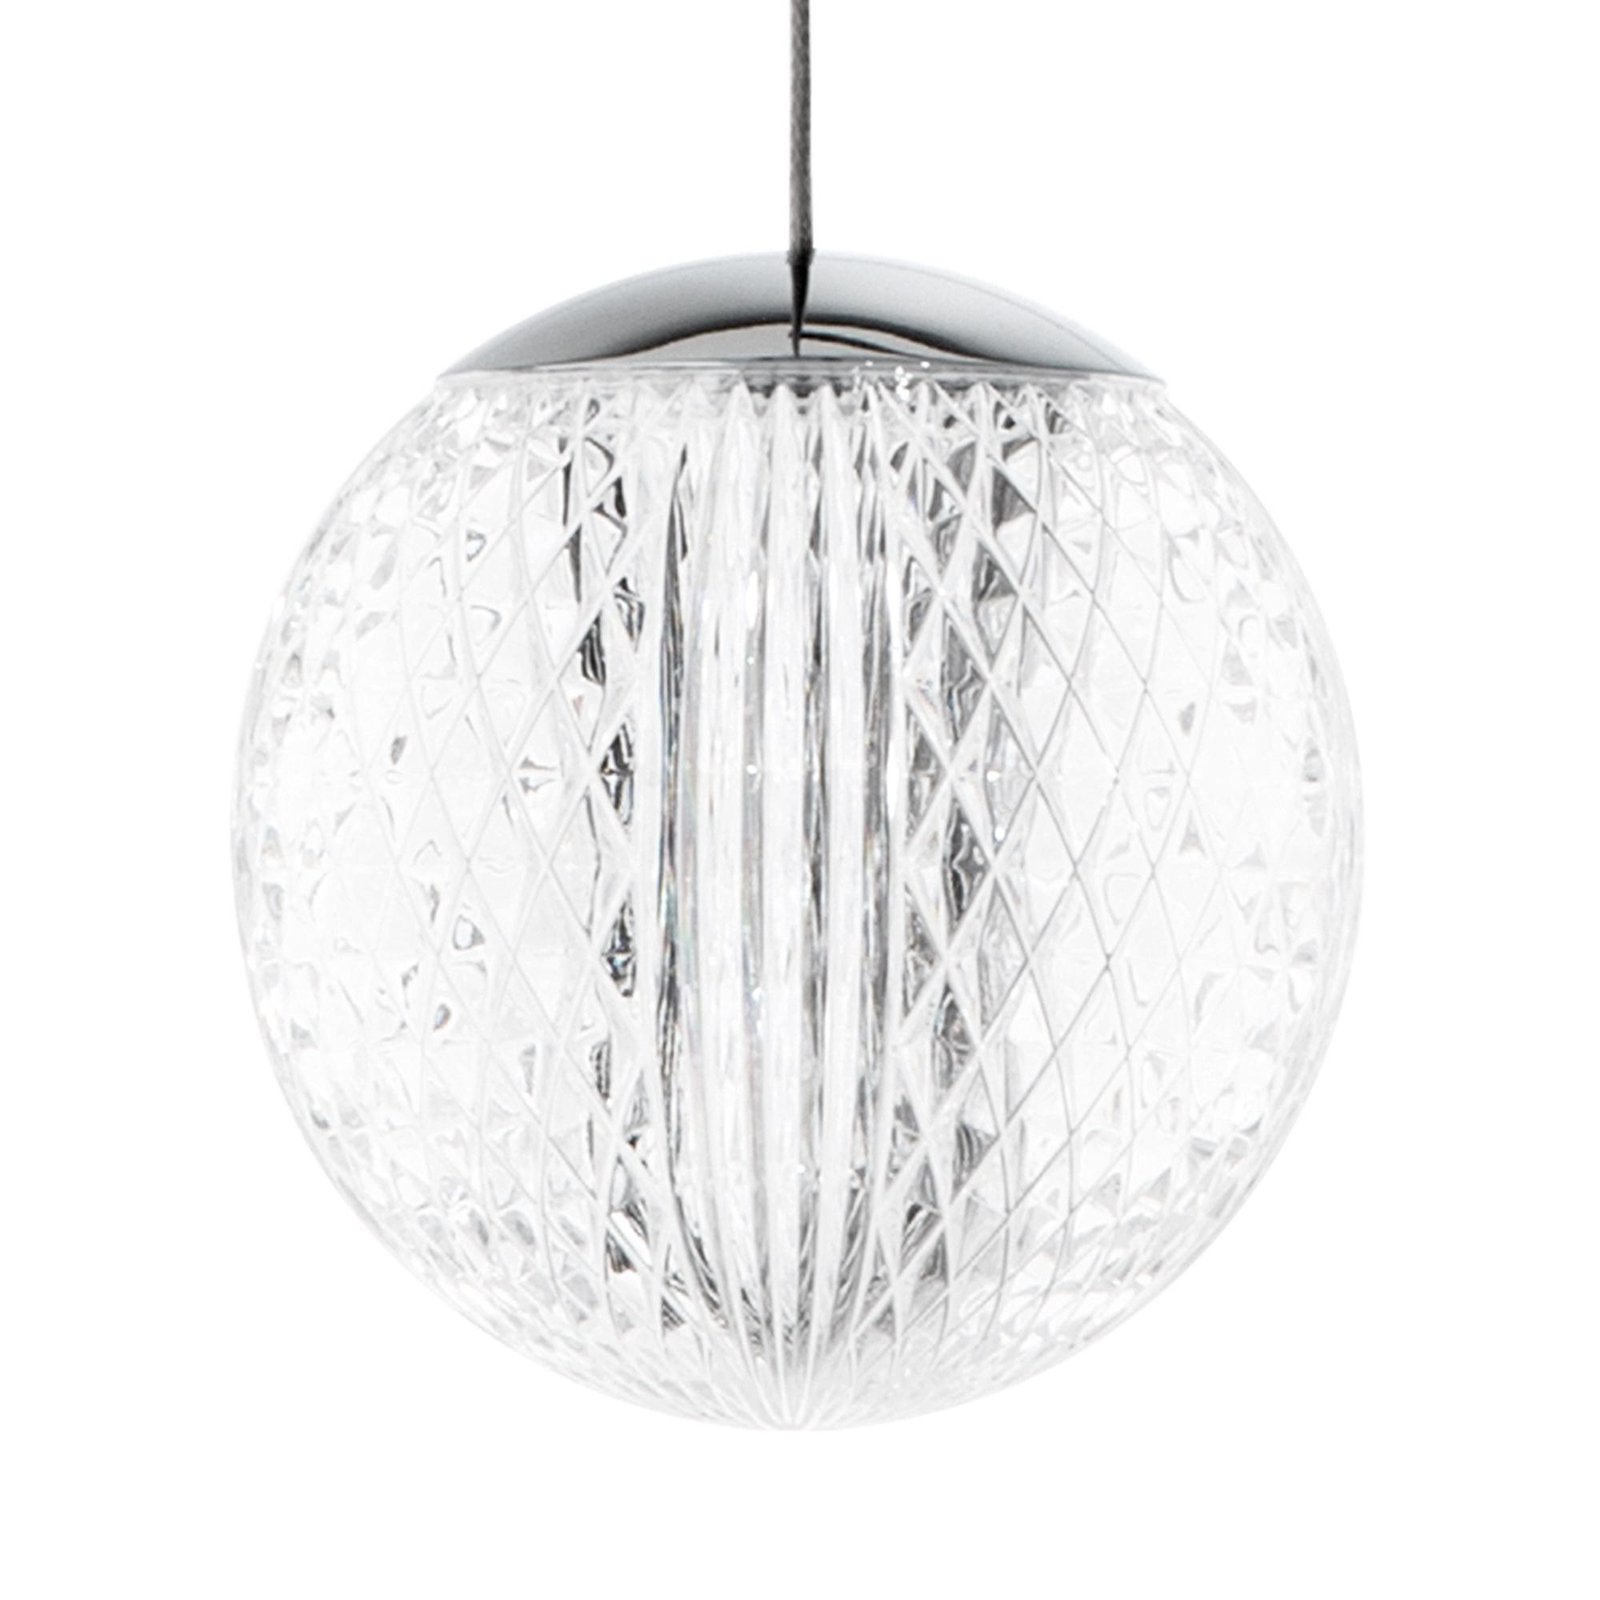 Ideal Lux LED висяща лампа Diamond с 3 светлини, цвят хром/ясен